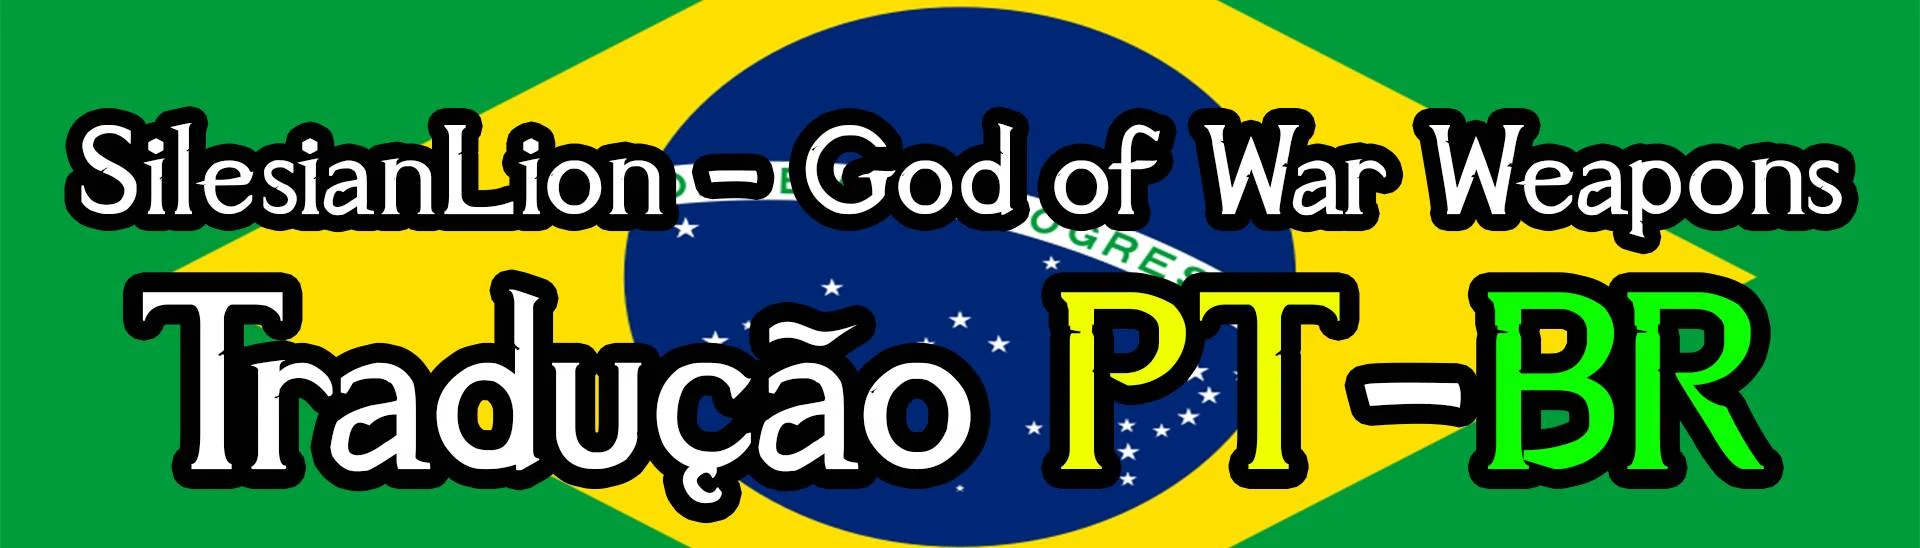 GOD OF WAR : GHOST OF SPARTA (PT-BR) – IGAMES